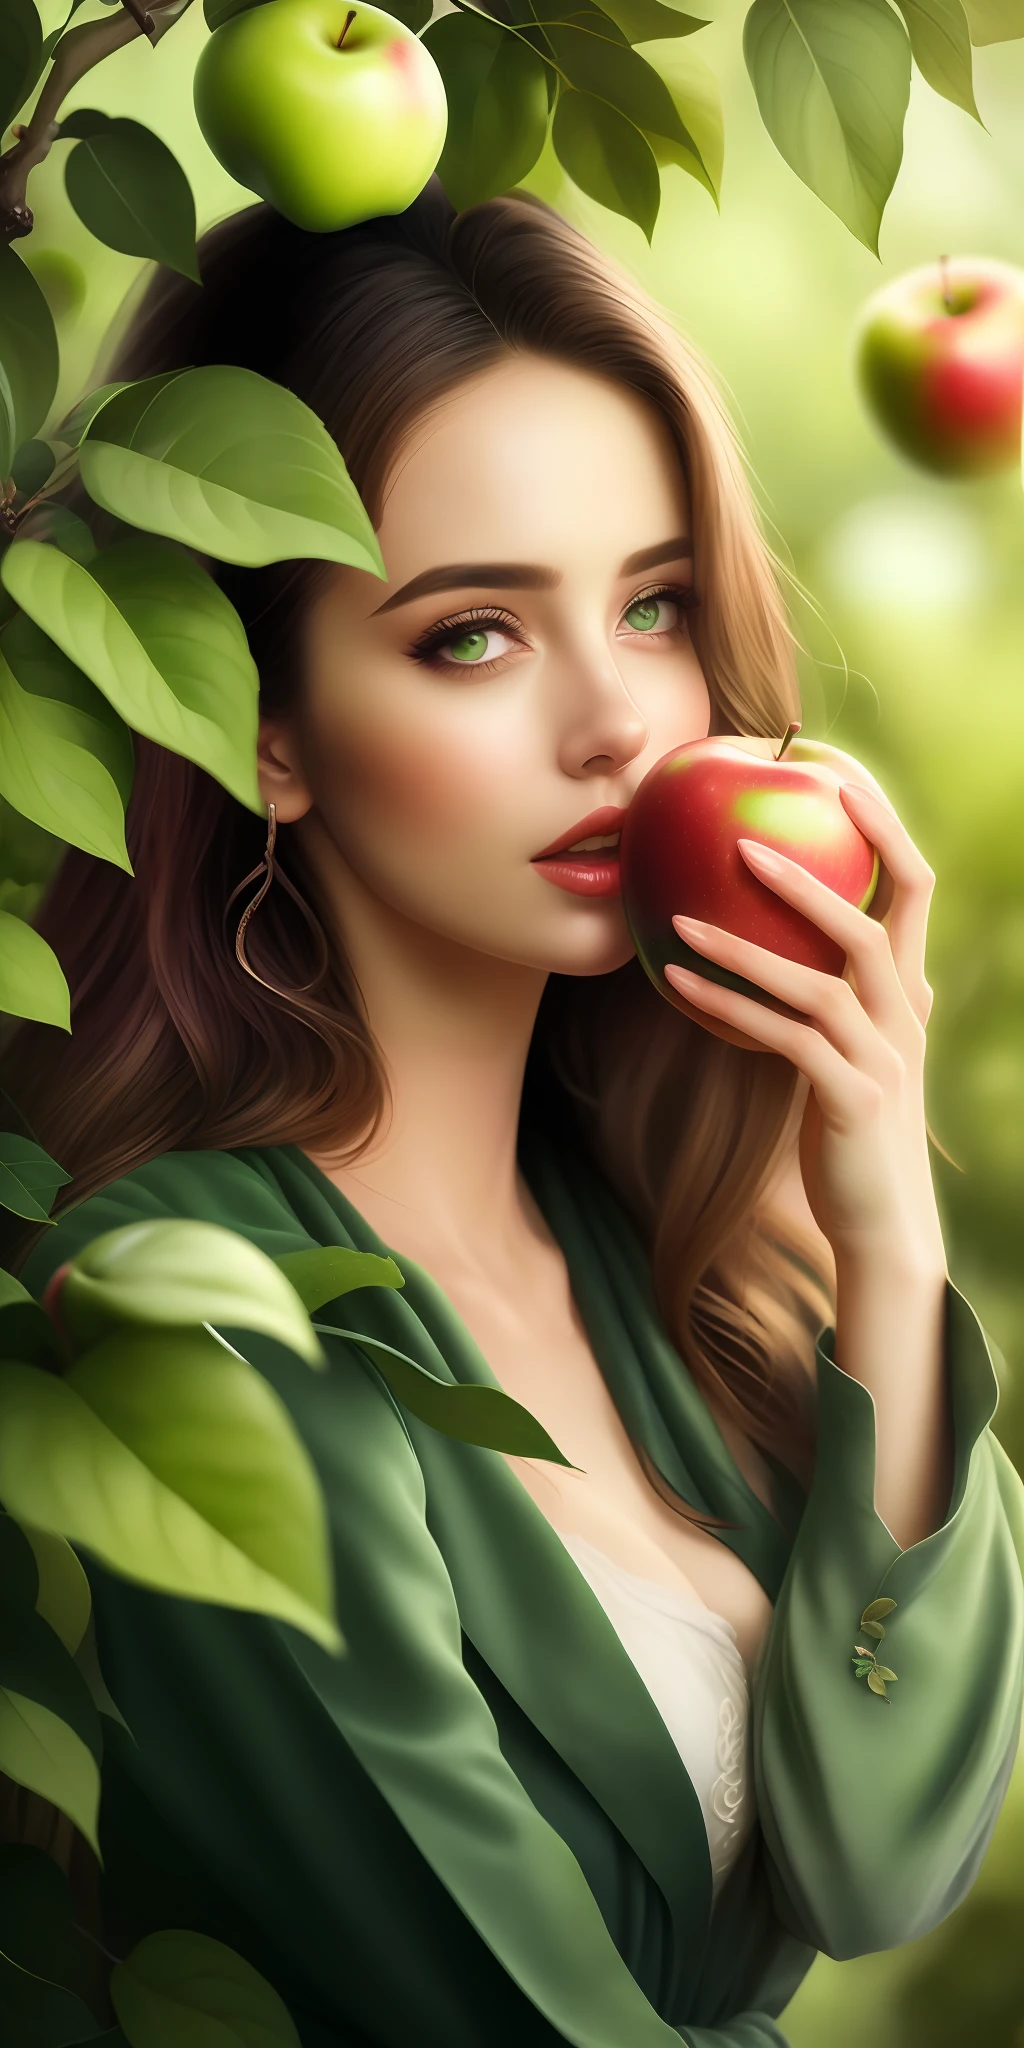 最好的质量,最高分辨率,8千, 艺术插图, 美丽的肖像, 杰作, 最美丽的女人,最美丽的女孩, 贪婪的眼睛, 咬苹果,穿着树叶, 披着绿叶,the 最美丽的女孩 in profile in front of 一棵苹果树, 贪婪的眼睛,, 一棵苹果树, 咬苹果